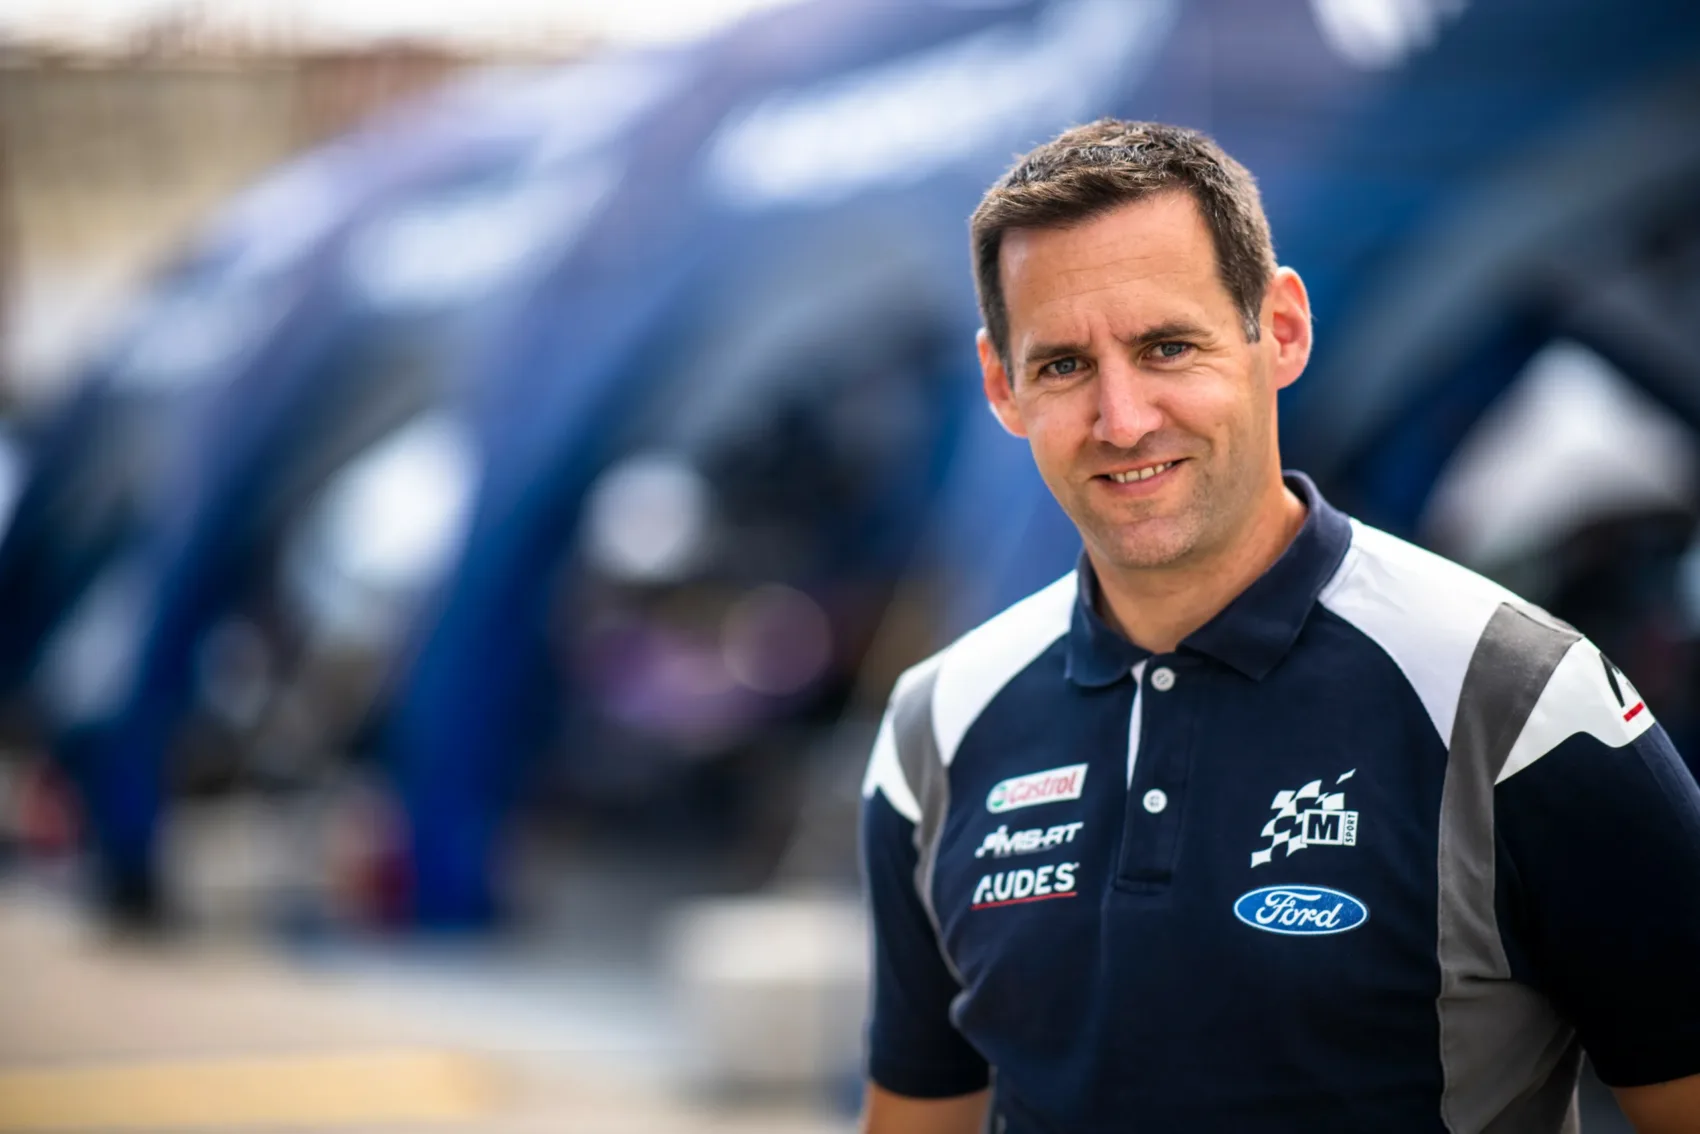 Az M-Sport üdvözli a tervezett WRC változásokat